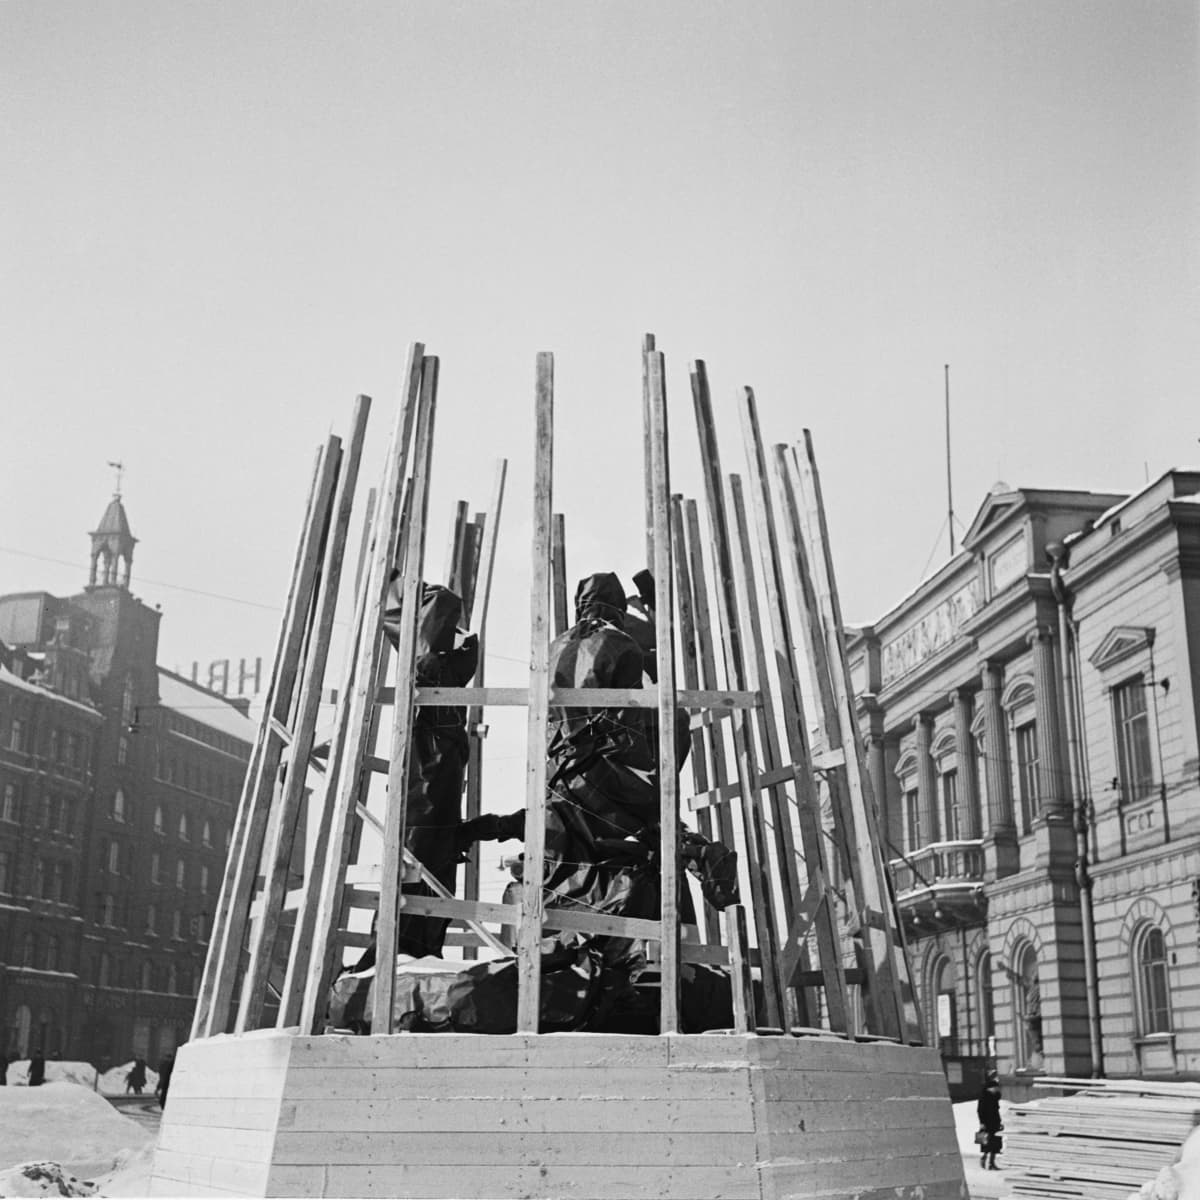 Julkisia taideteoksia haluttiin pelastaa sodan jaloista ja evakuoida turvaan pommituksilta. Kolmen sepän patsas Helsingin keskustasta pakattiin ja haudattiin Tikkurilassa soranottokuoppaan. Patsas palasi paikoilleen vuotta myöhemmin.